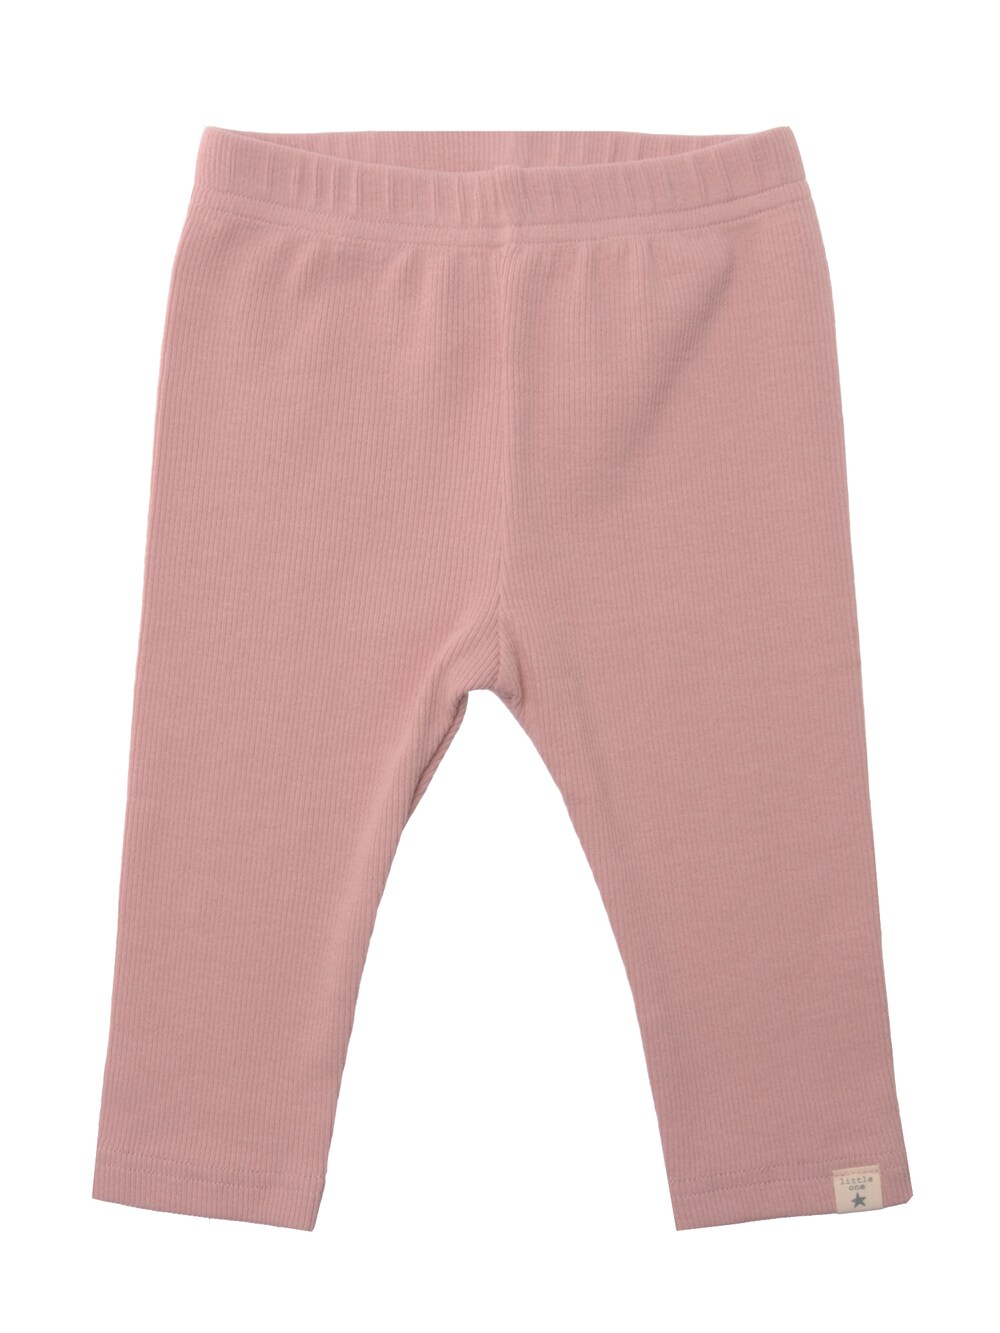 Обычные брюки LILIPUT Little One, розовый обычные брюки liliput бежевый песочный